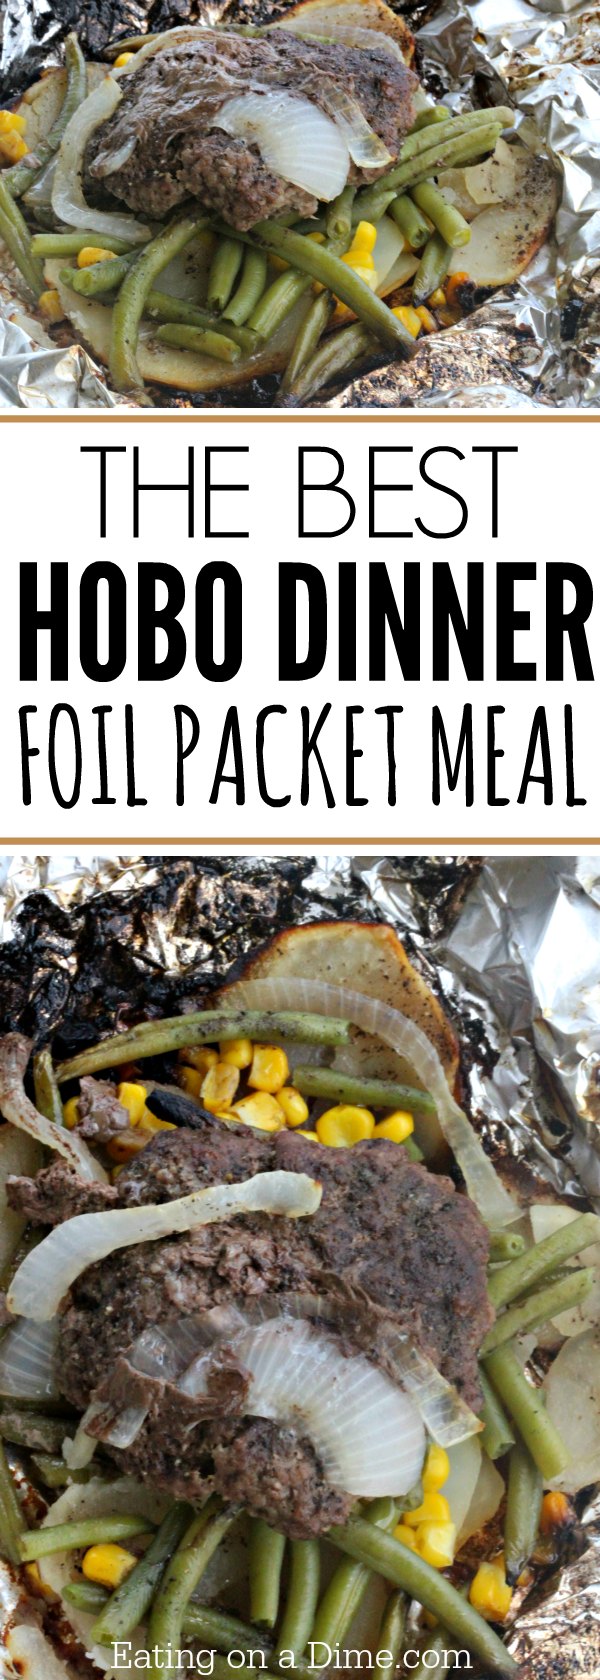 Hobo Dinner Foil Packet Meal - The best hobo dinner recipe